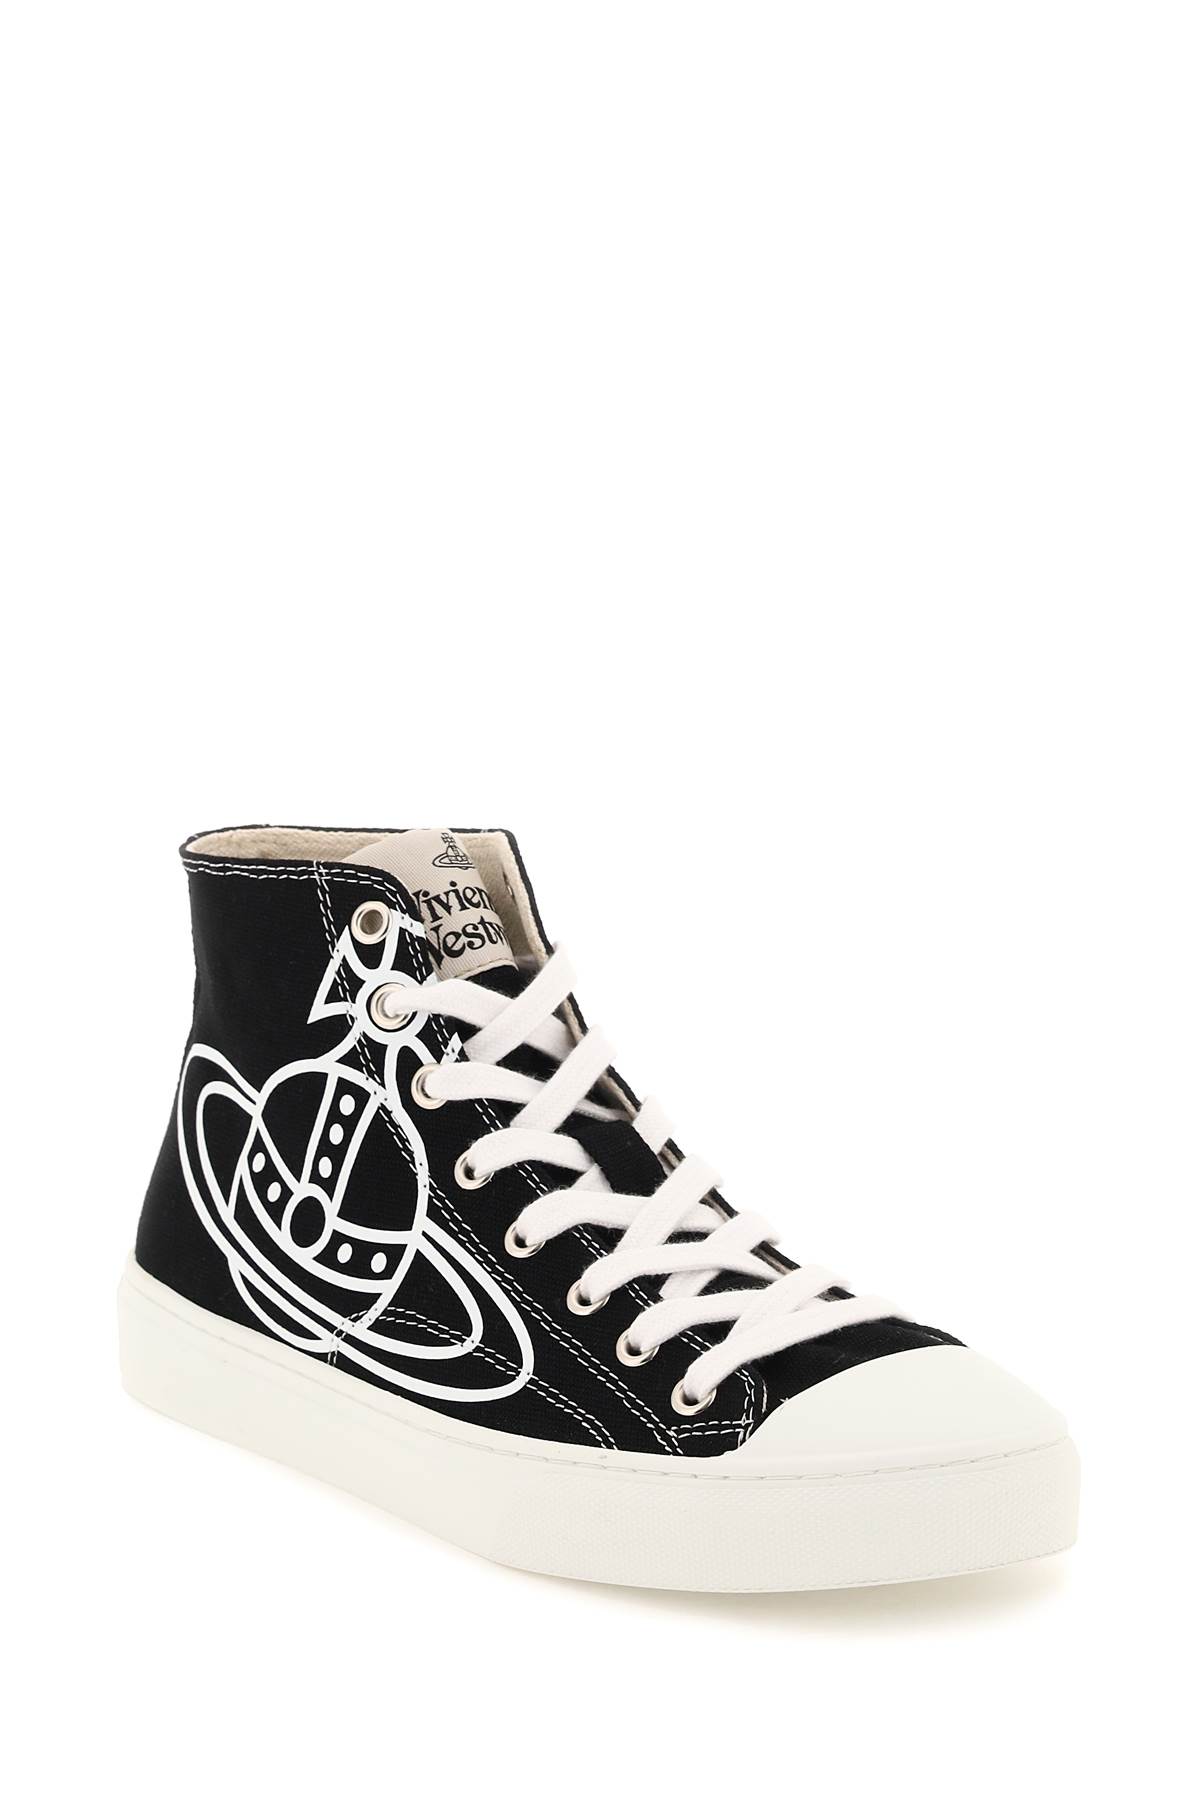 Shop Vivienne Westwood Plimsoll High Top Sneakers In Black (black)